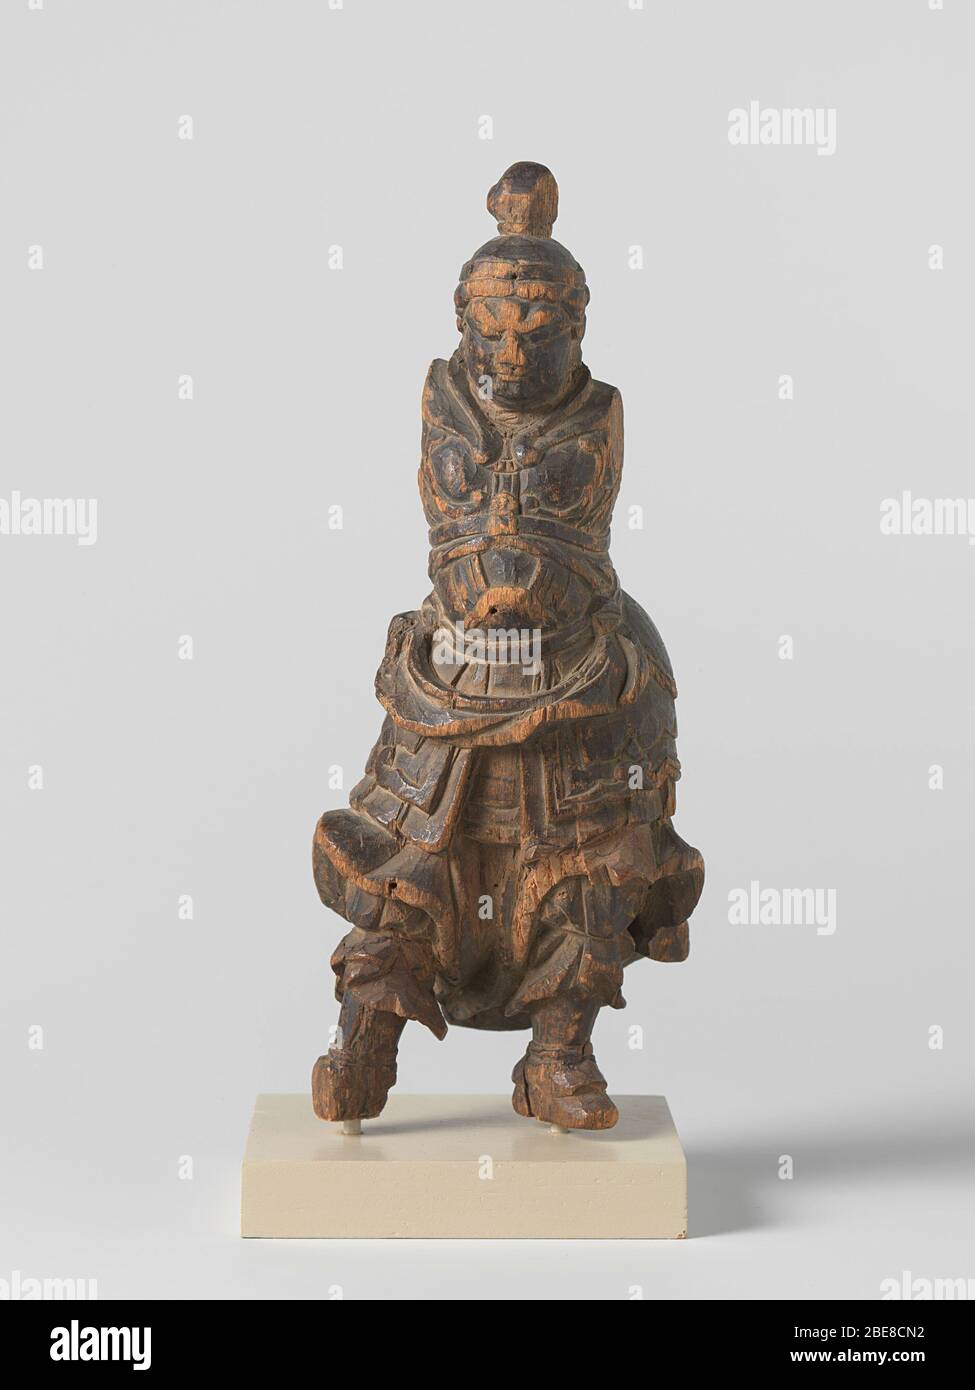 'skulptur; stehender Bishamon; seine Arme fehlen und sein rechter Fuß teilweise abgebrochen.; zwischen 1400 und 1500 Datum QS:P571,+1500-00-00T00:00:00Z/6,P1319,+1400-00-00T00:00:00Z/9,P1326,+1500-00-00T00:00:00Z/9; ' Stockfoto